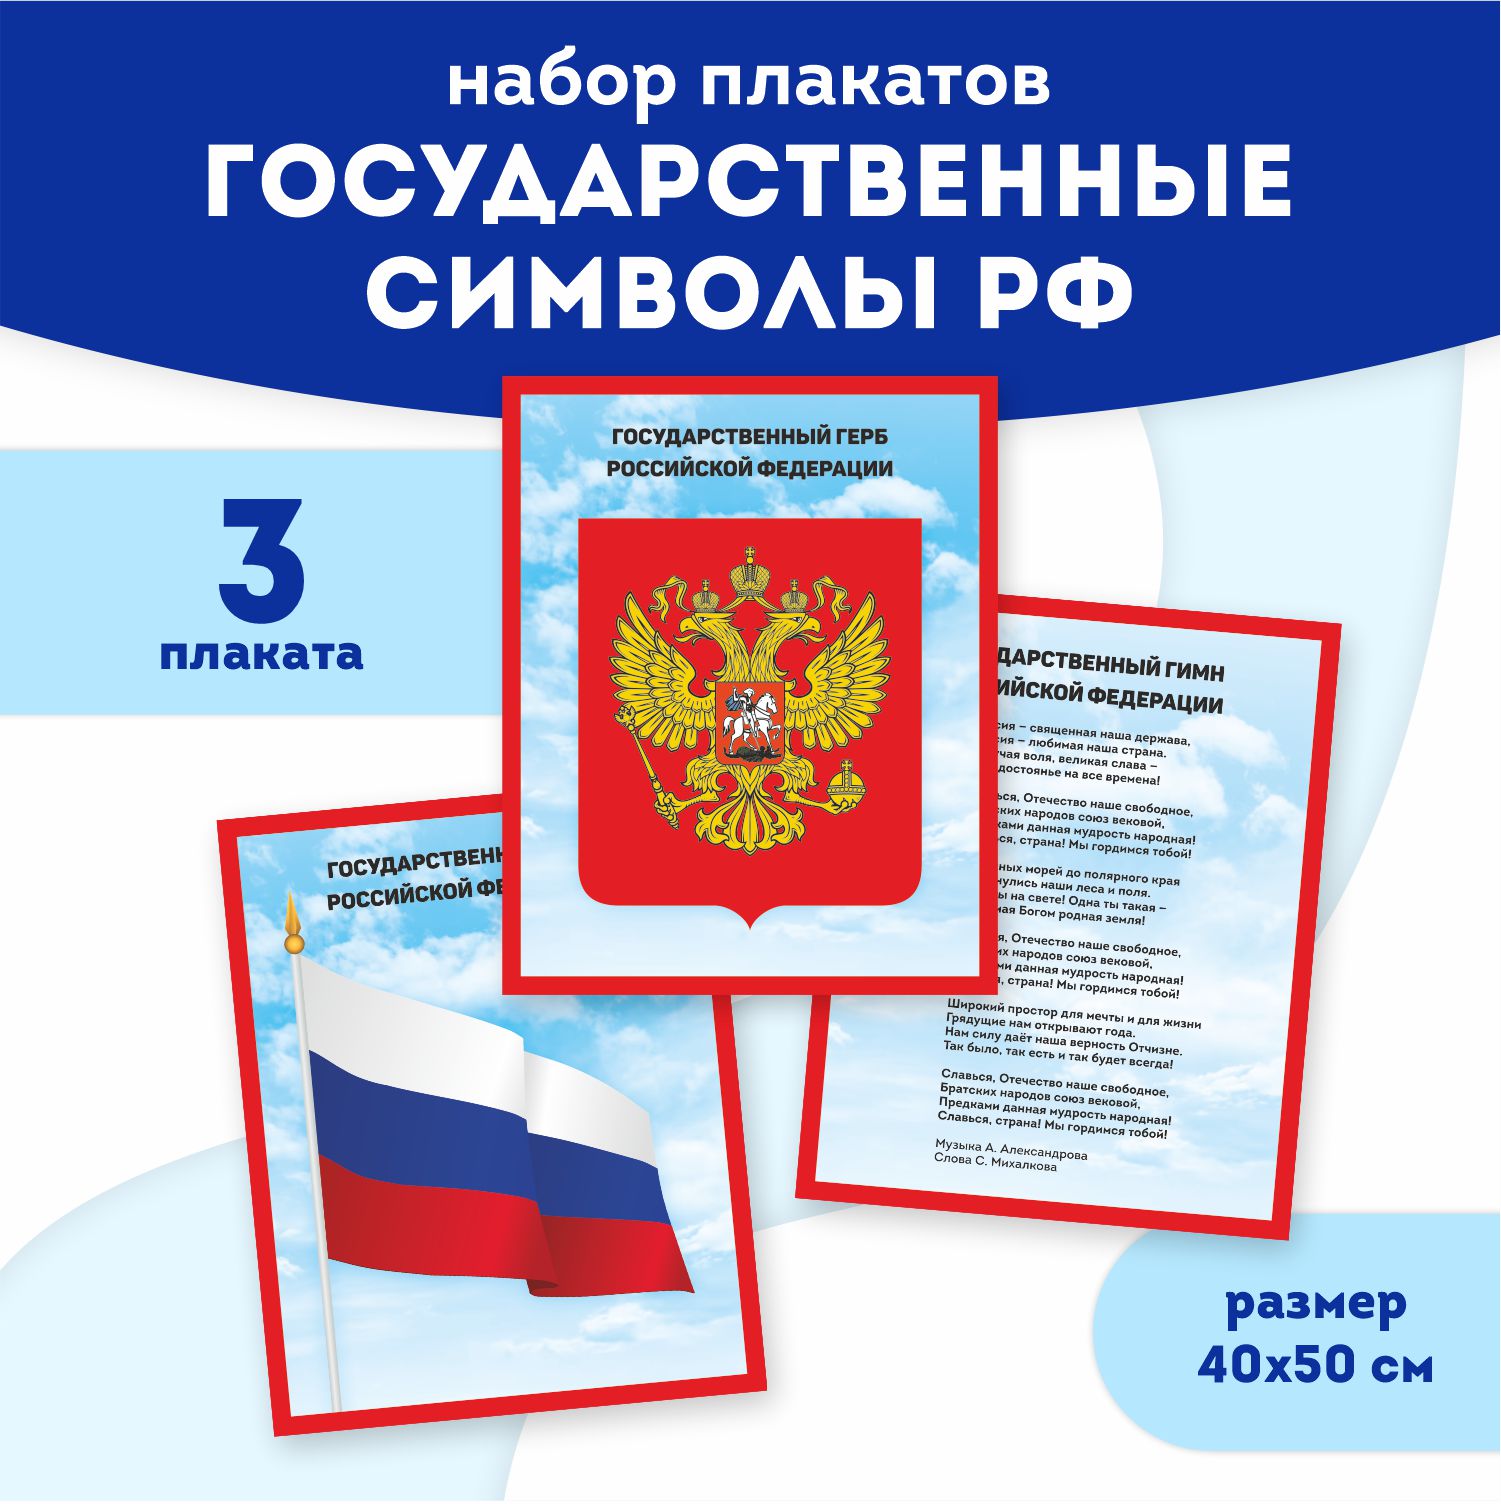 Набор плакатов Выручалкин, Государственные символы РФ, 3 шт